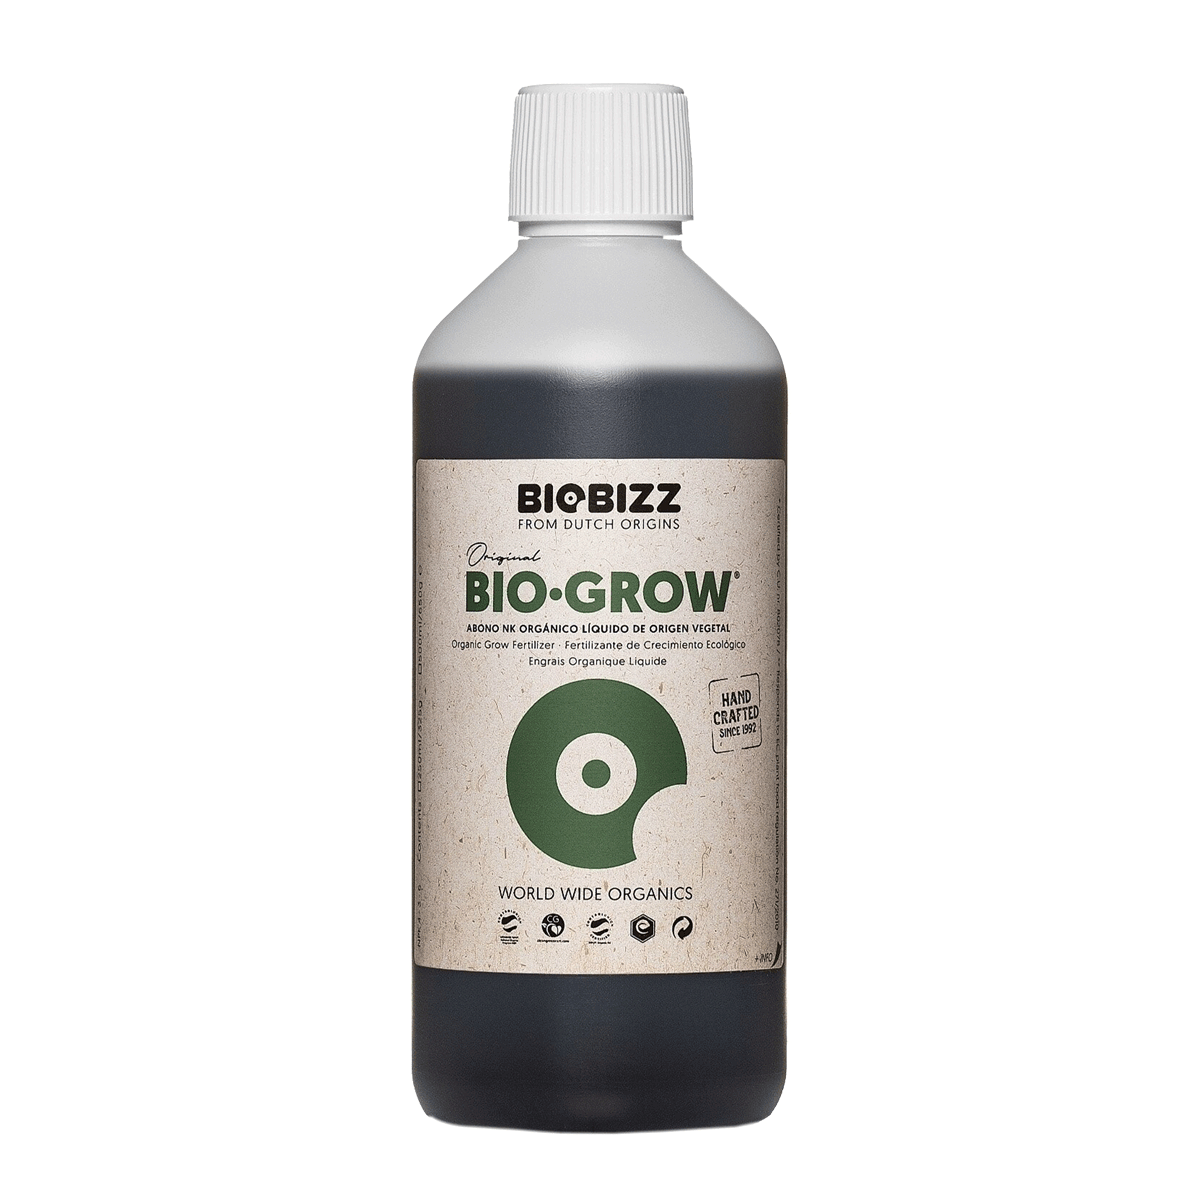 BioBizz Bio-Grow - Hochwertiger Bio-Wachstumsdünger 